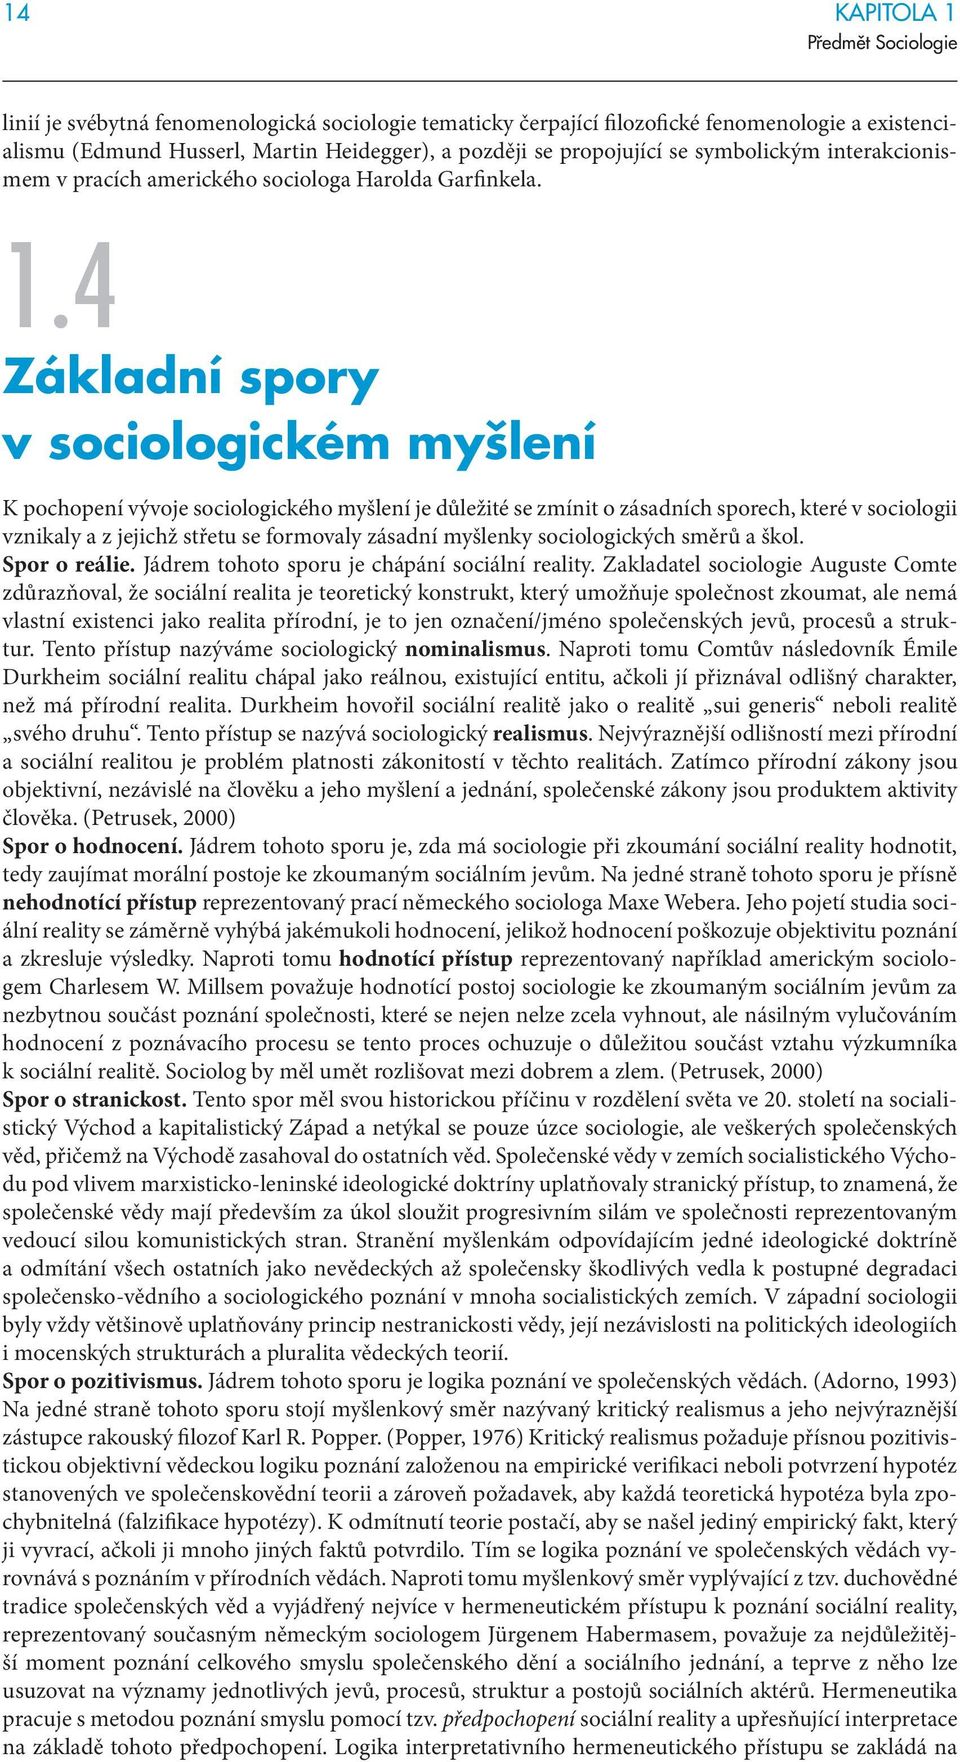 Základní spory v sociologickém myšlení K pochopení vývoje sociologického myšlení je důležité se zmínit o zásadních sporech, které v sociologii vznikaly a z jejichž střetu se formovaly zásadní